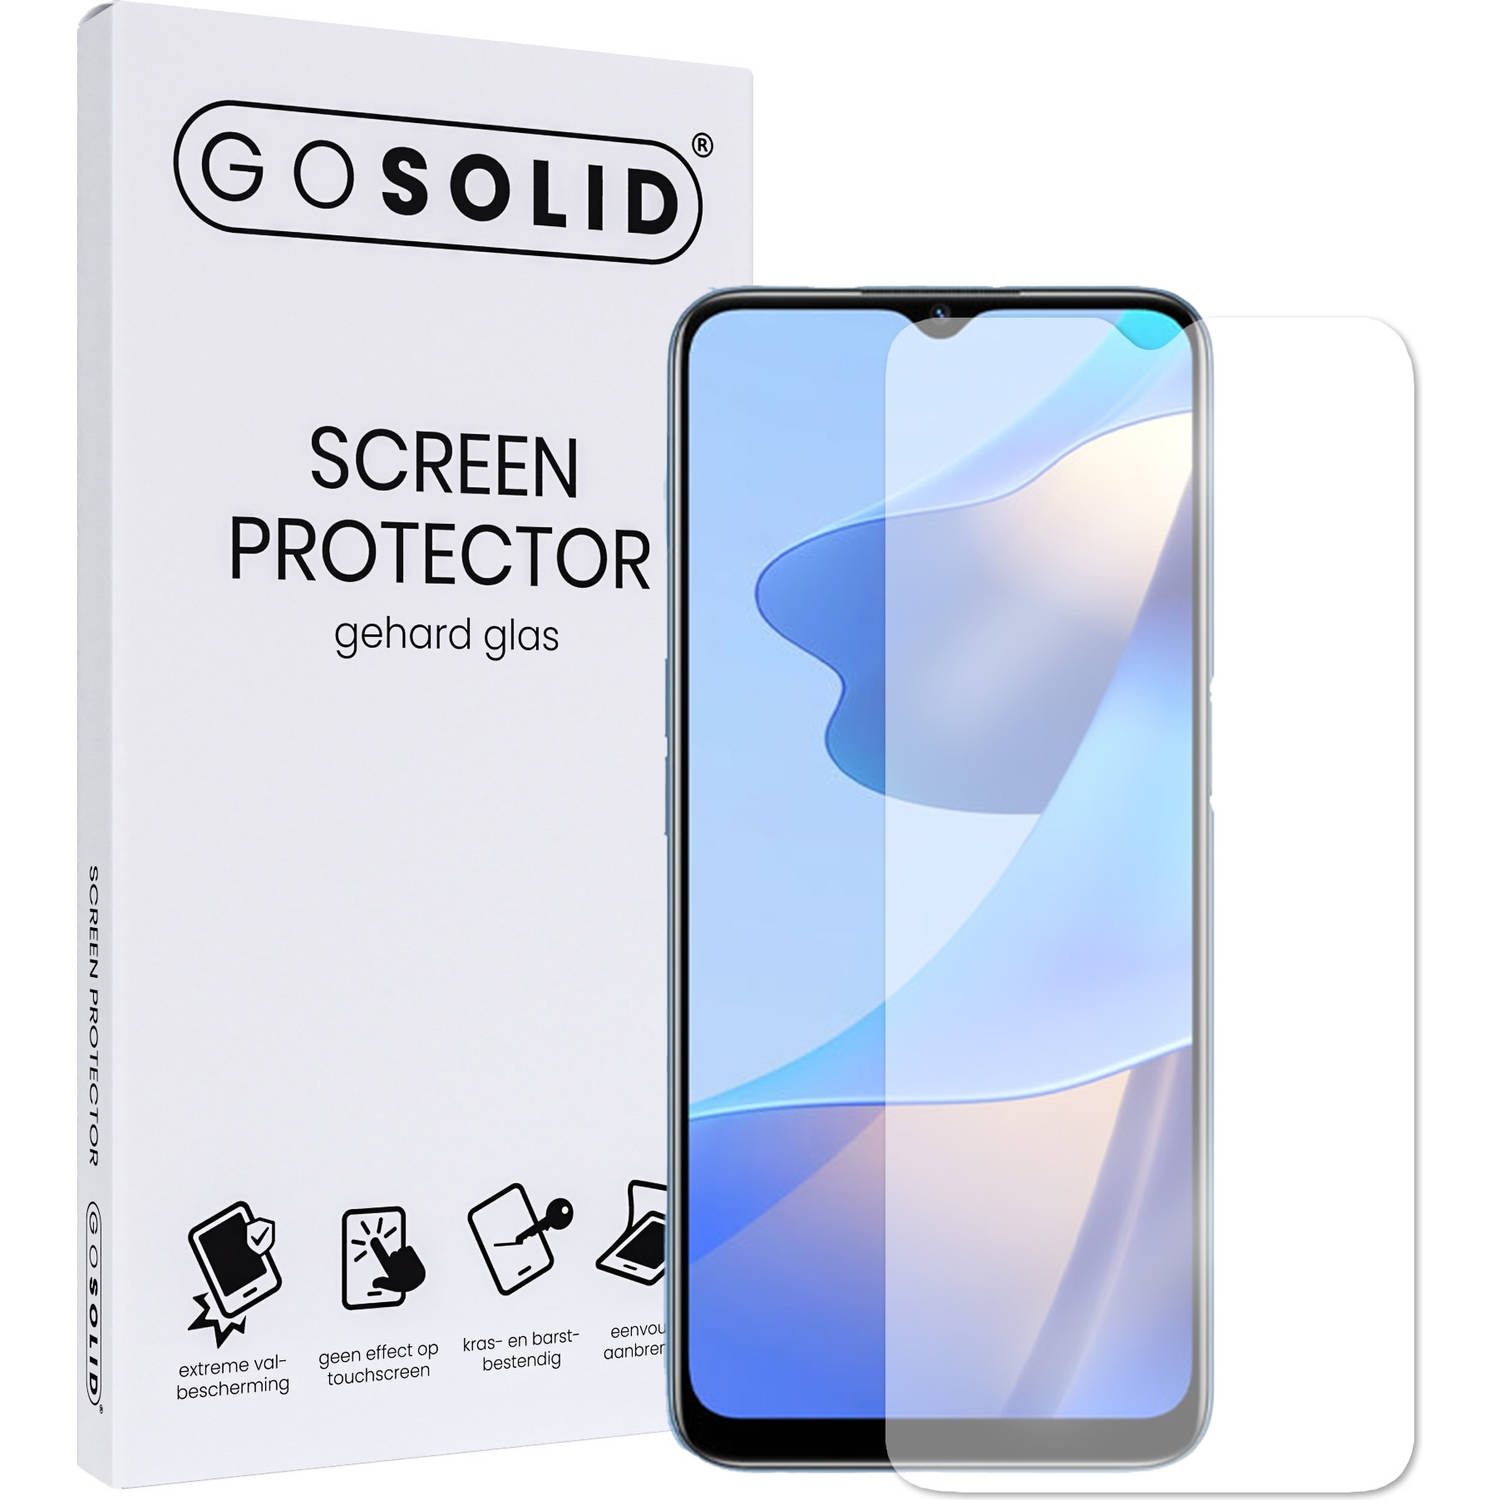 GO SOLID! Screenprotector voor Samsung Galaxy A40